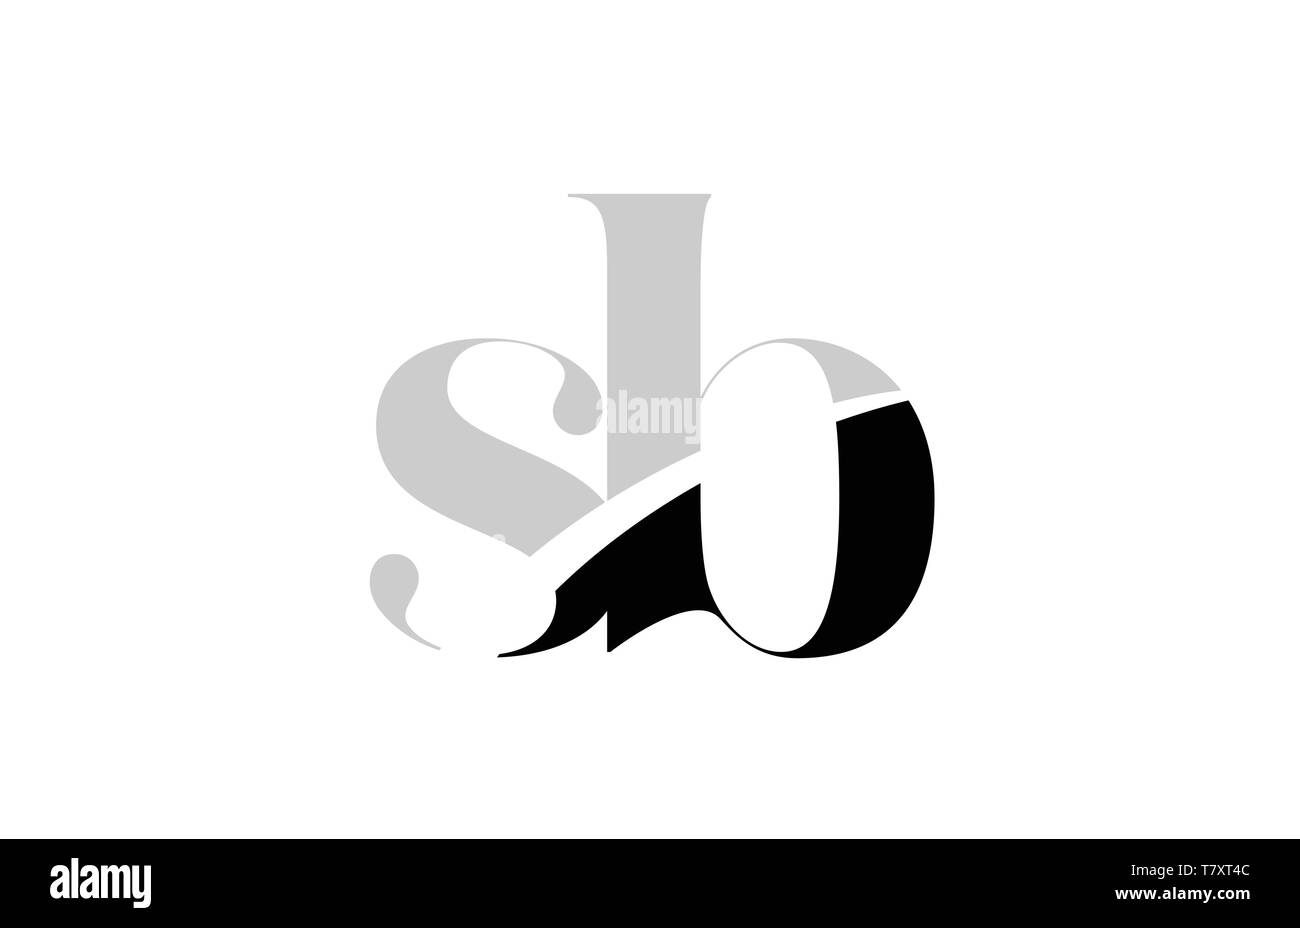 Schwarze und weiße Buchstaben sb s b logo Icon Design für eine Firma oder Geschäft Stock Vektor